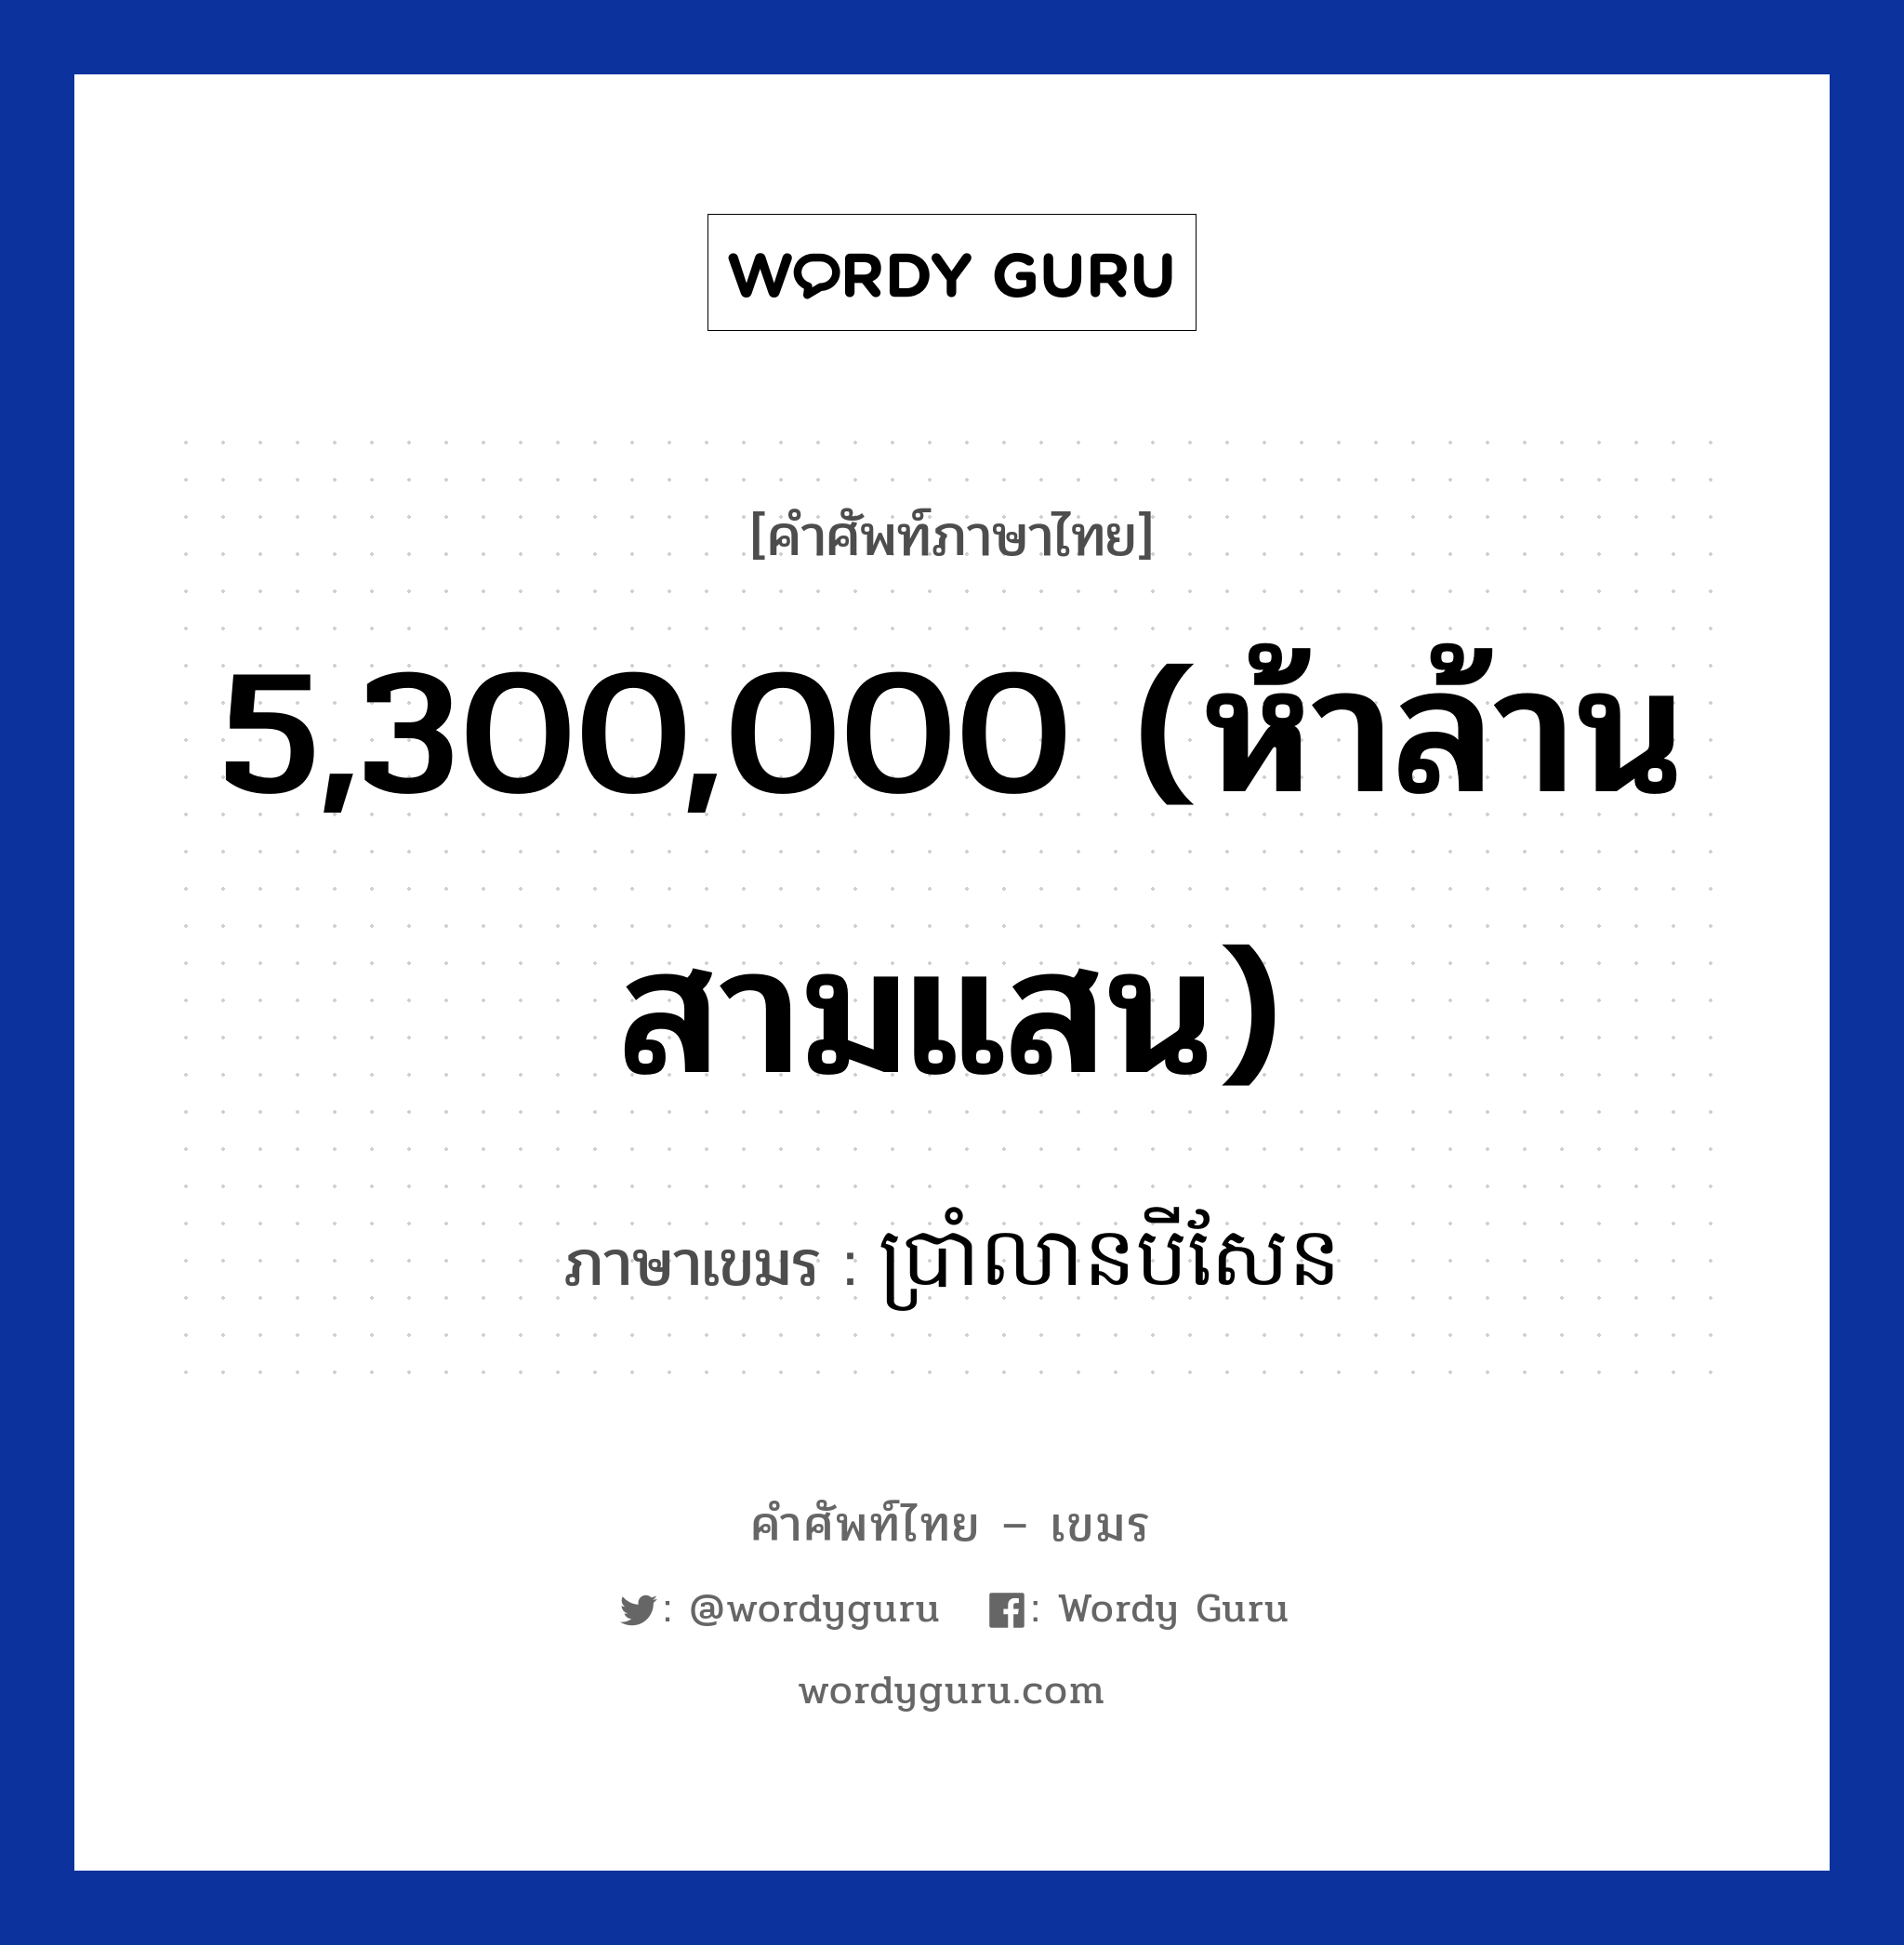 ប្រាំលានបីសែន ภาษาไทย?, คำศัพท์ภาษาไทย - เขมร ប្រាំលានបីសែន ภาษาเขมร 5,300,000 (ห้าล้านสามแสน) หมวด การนับเลข Bramleanbeisean หมวด การนับเลข